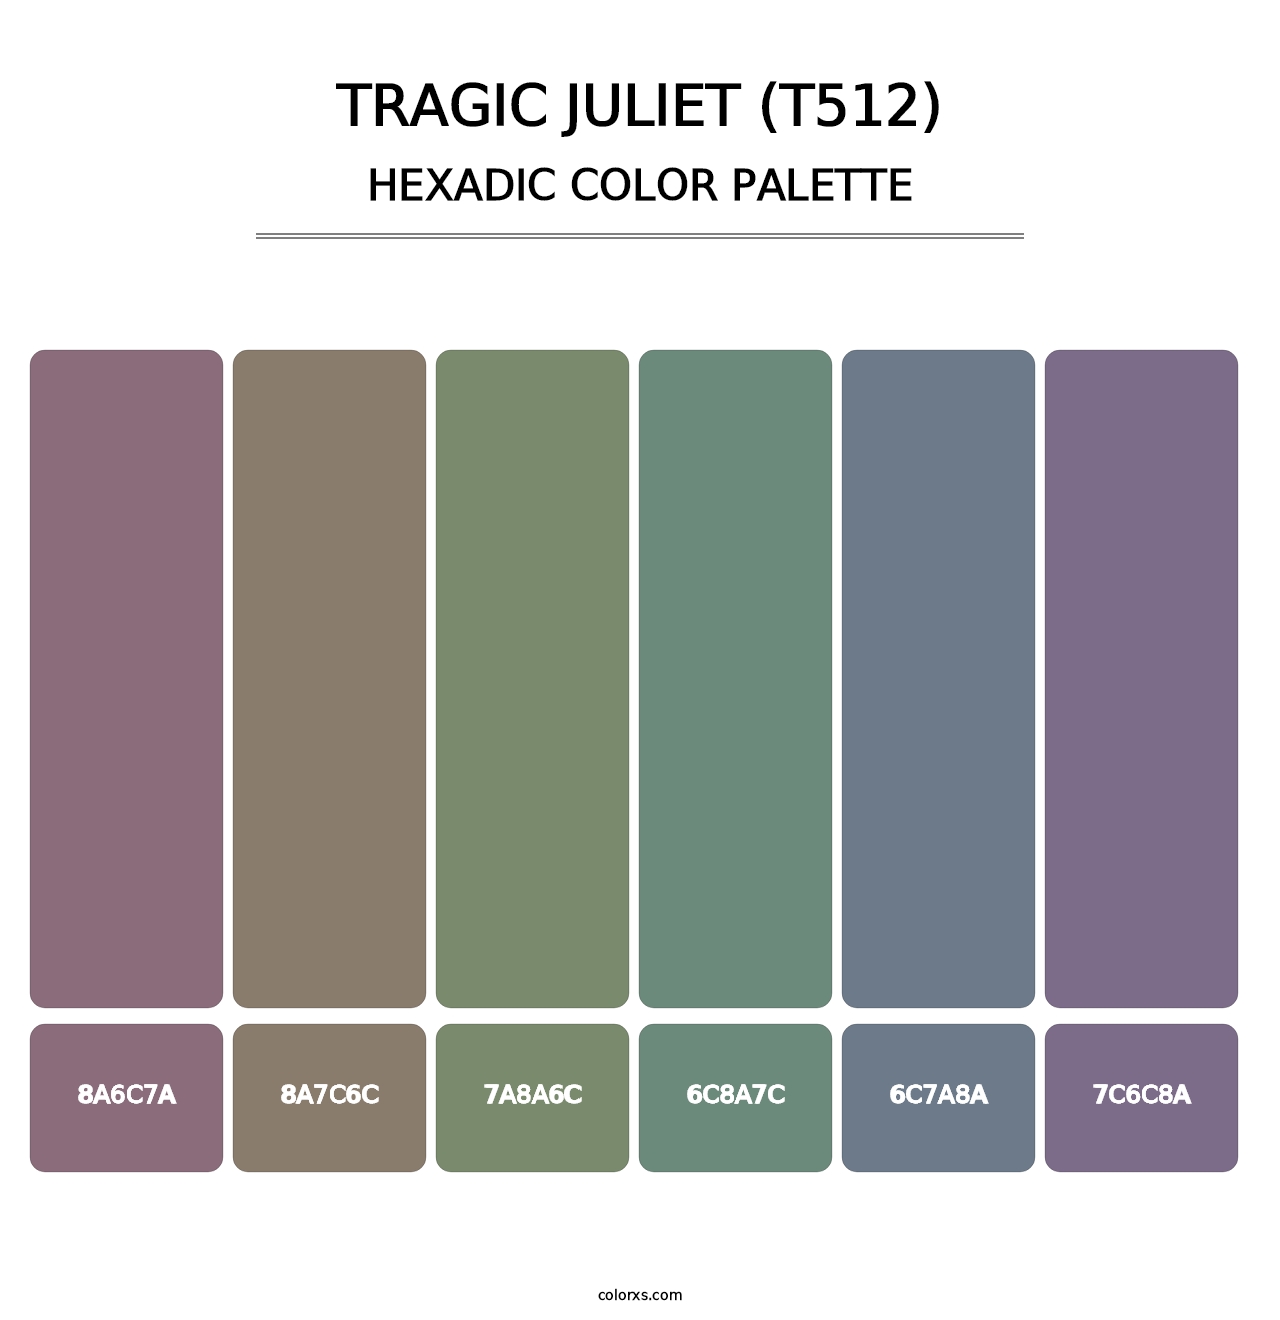 Tragic Juliet (T512) - Hexadic Color Palette